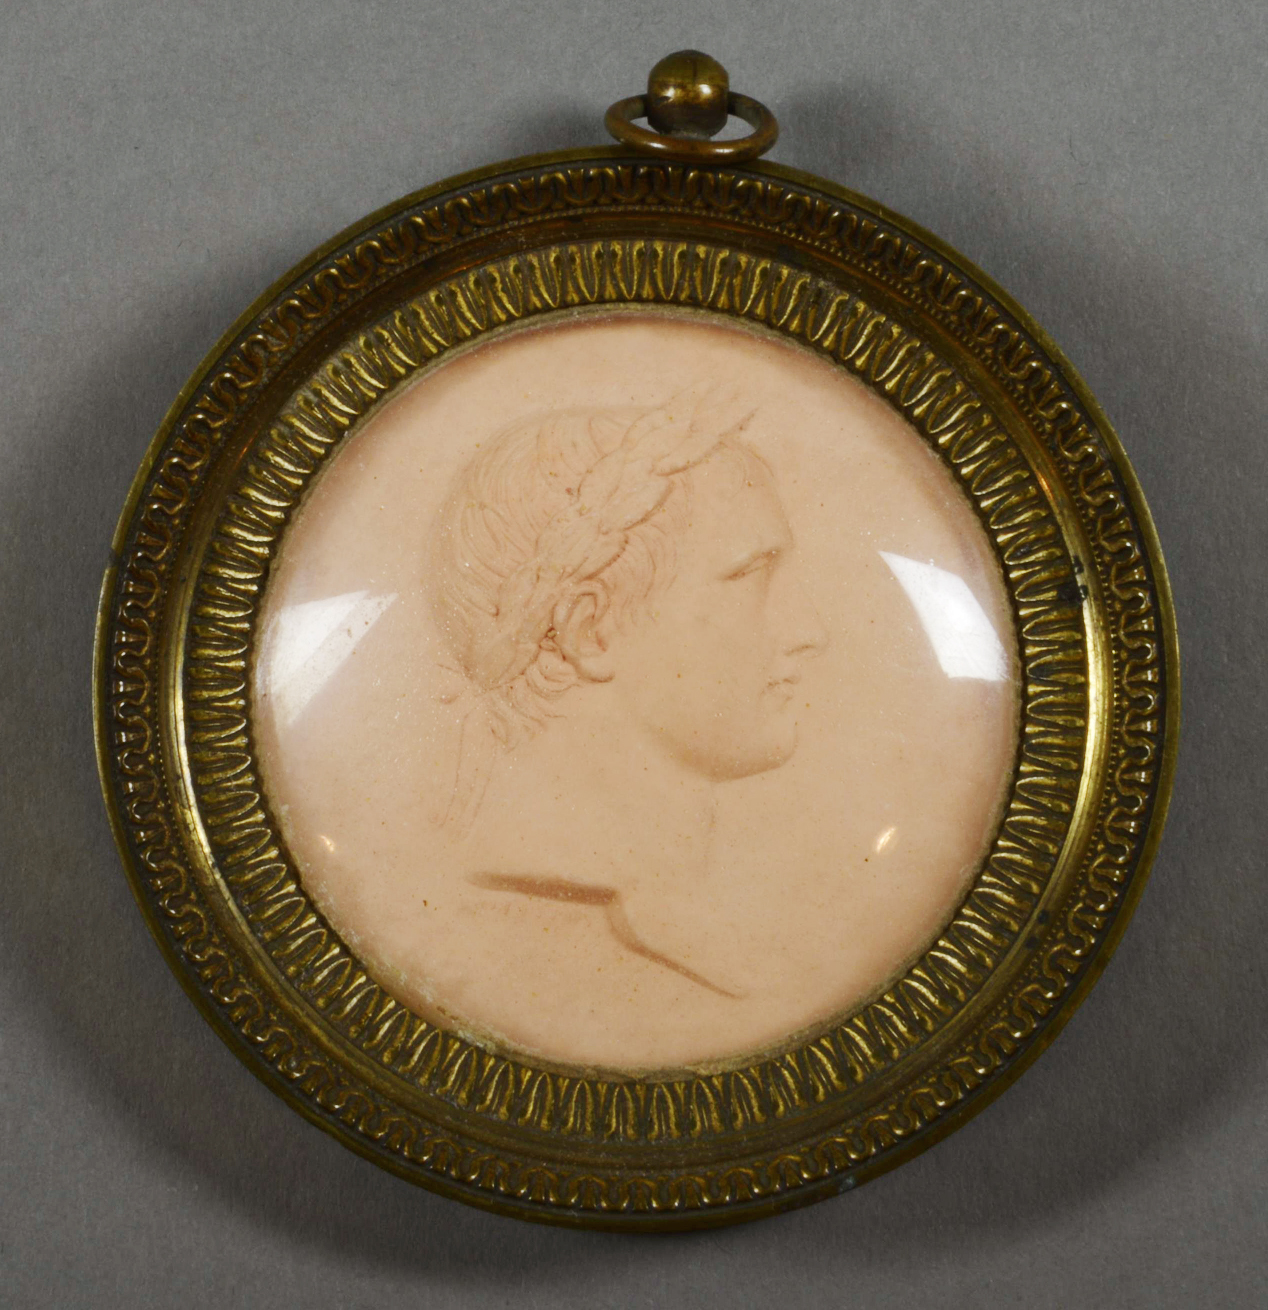 Барельеф с профильным портретом императора Наполеона I. Неизвестный автор. Франция. Начало XIX в.